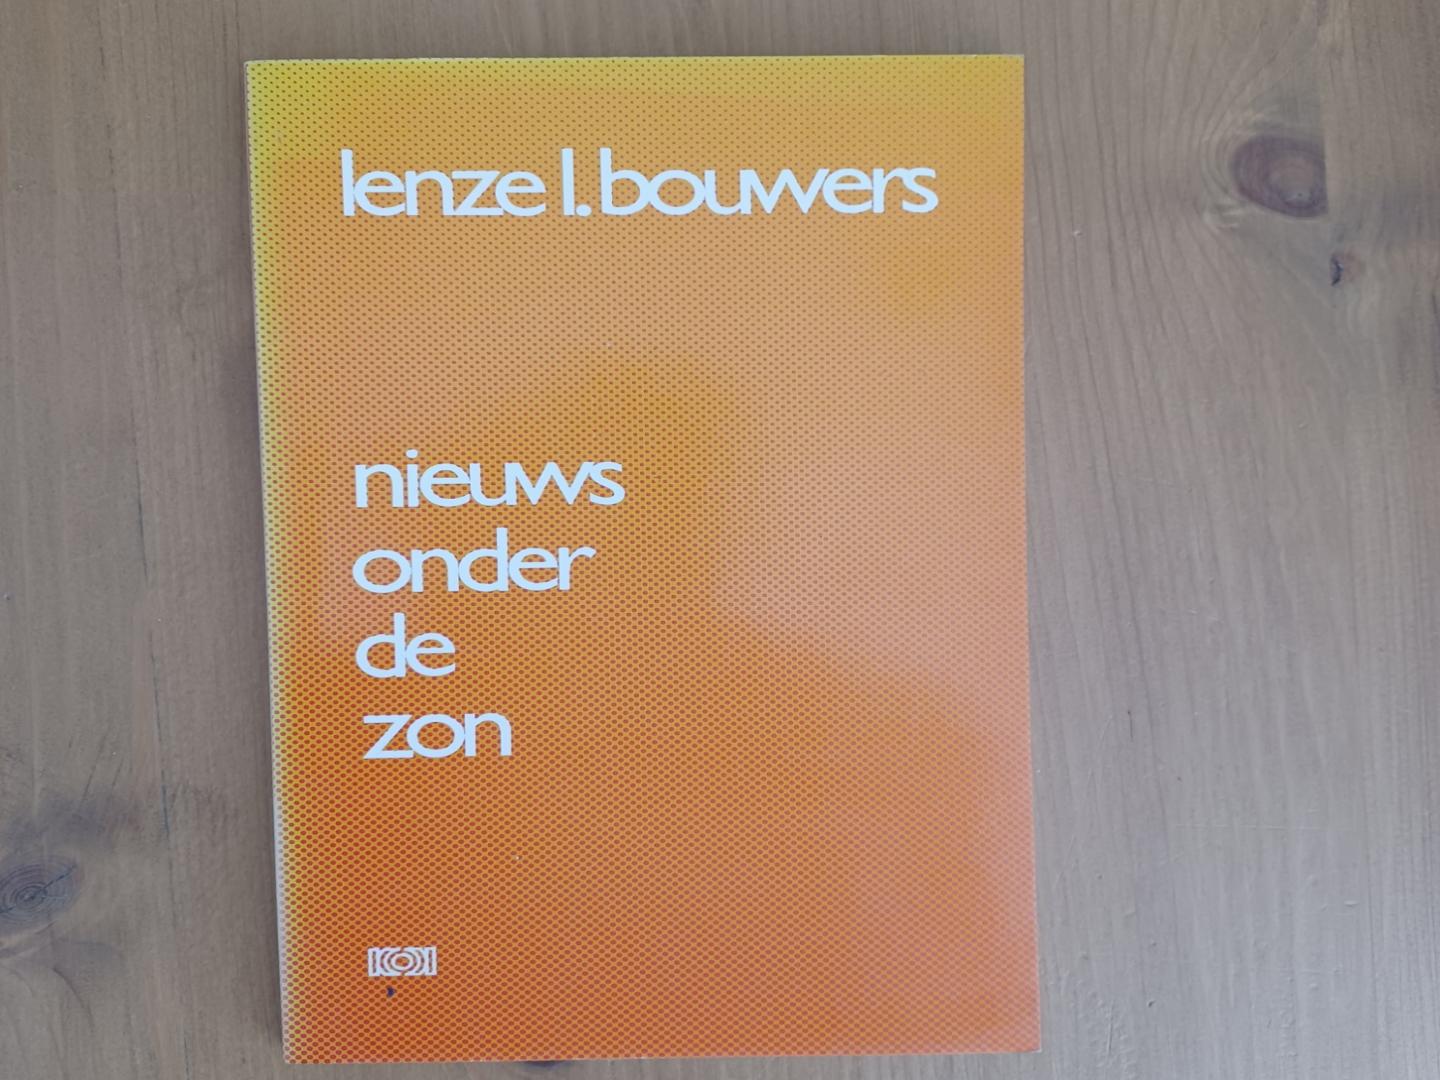 Bouwers, Lenze L. - Nieuws onder de zon